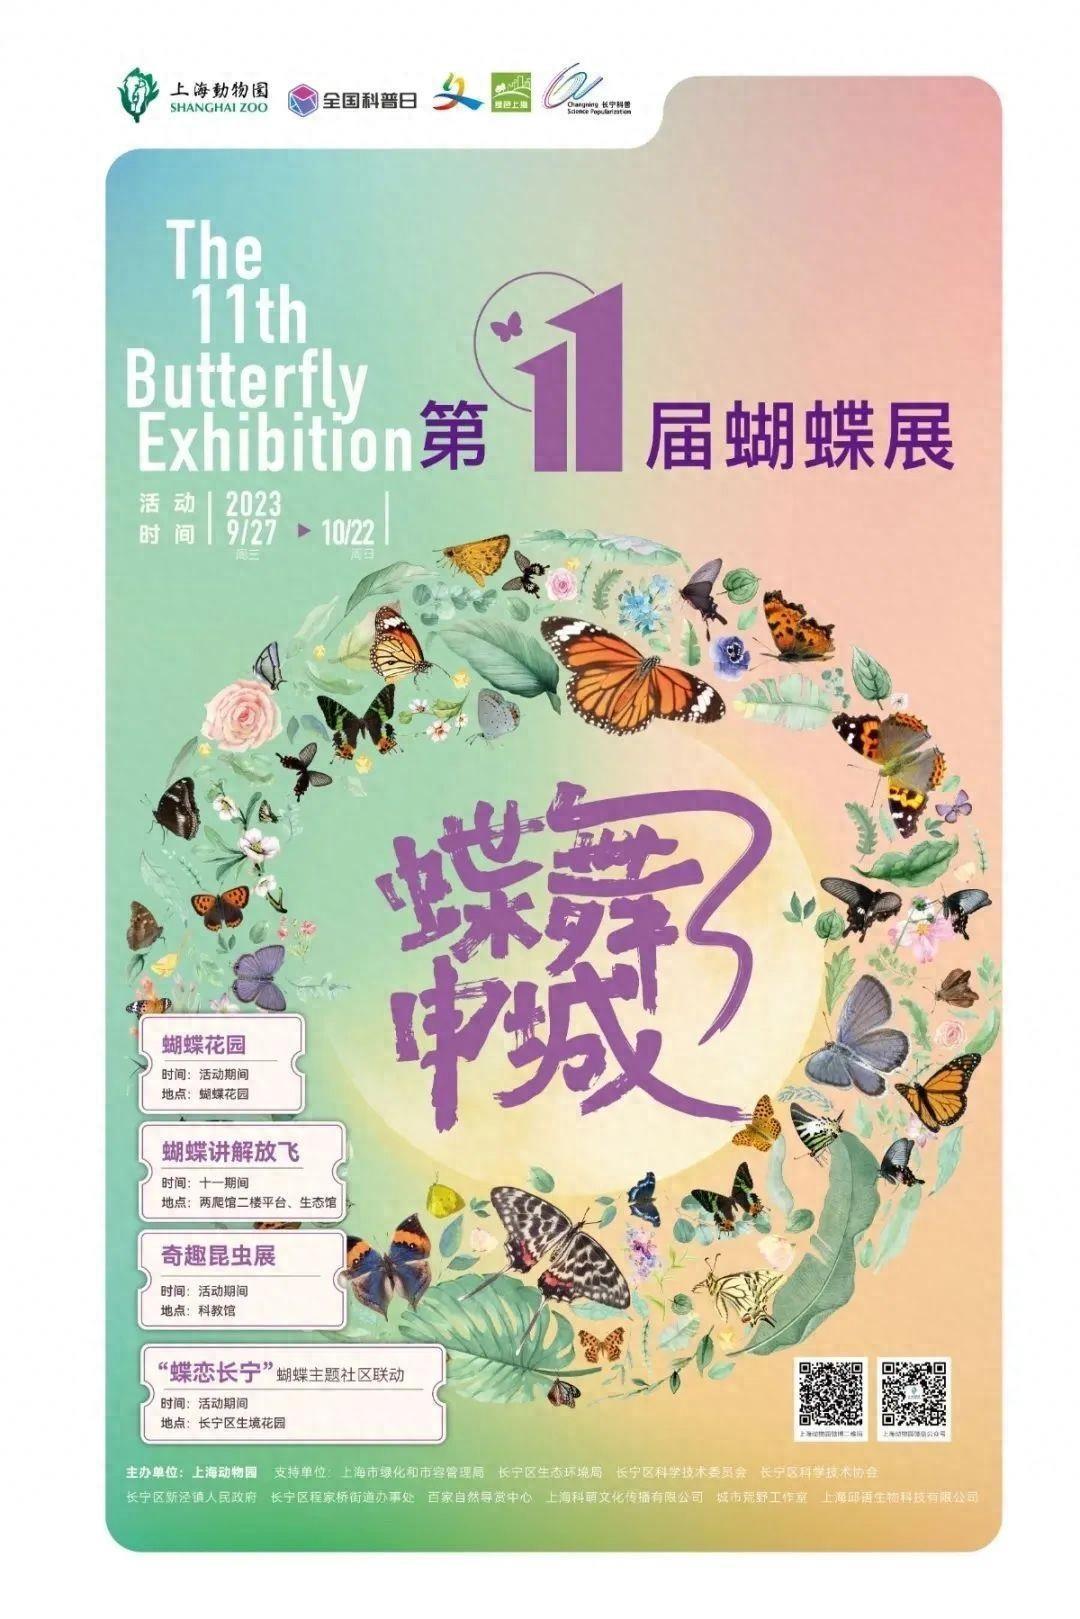 本周末，来上海动物园探索蝴蝶展，有机会获得限定礼品～